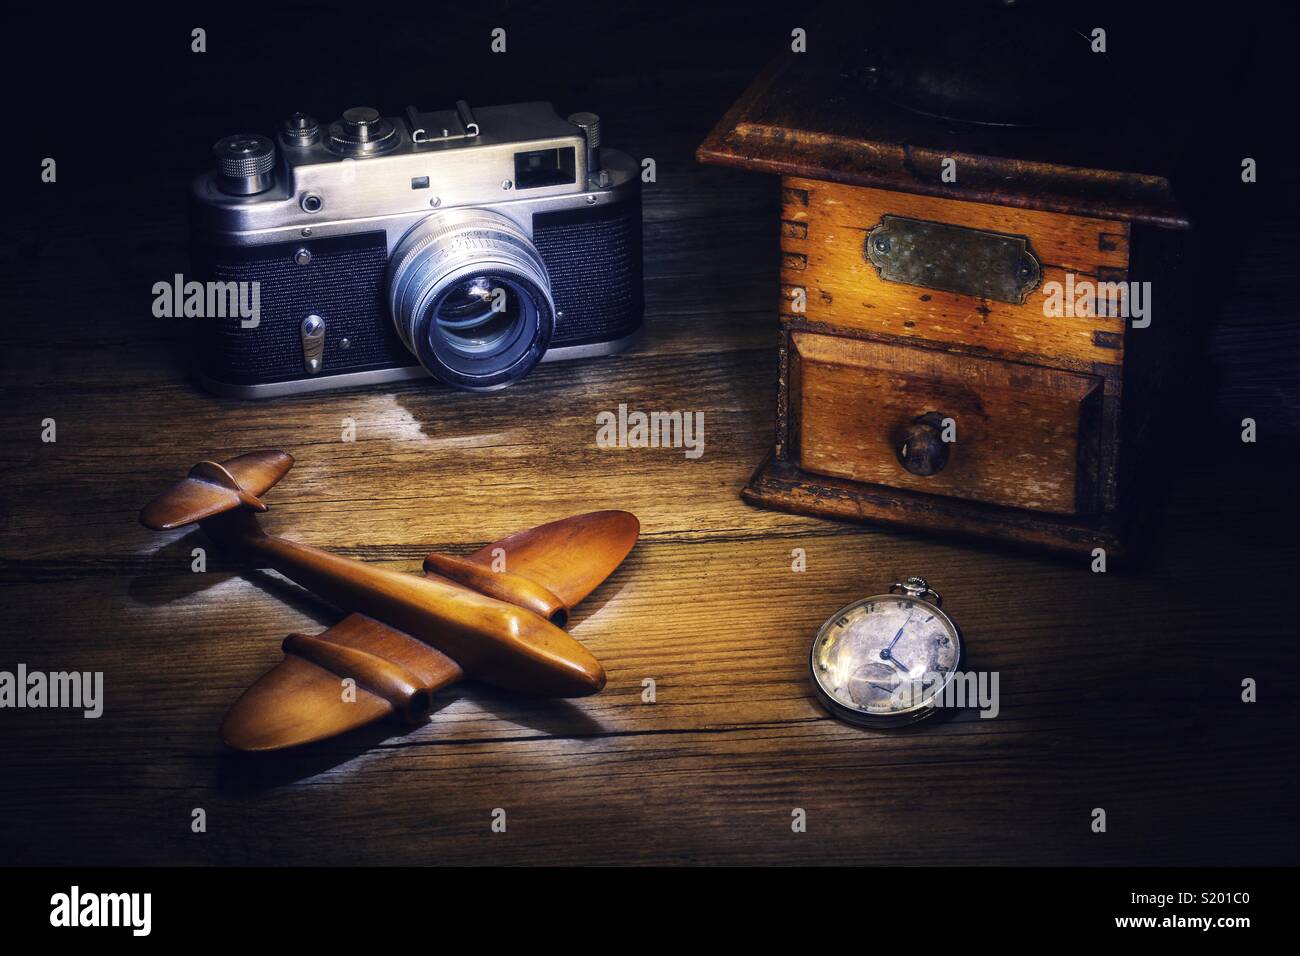 Vintage romantische Stimmung - Kamera Kaffeemühle Spielzeug Flugzeug und  eine Uhr Stockfotografie - Alamy